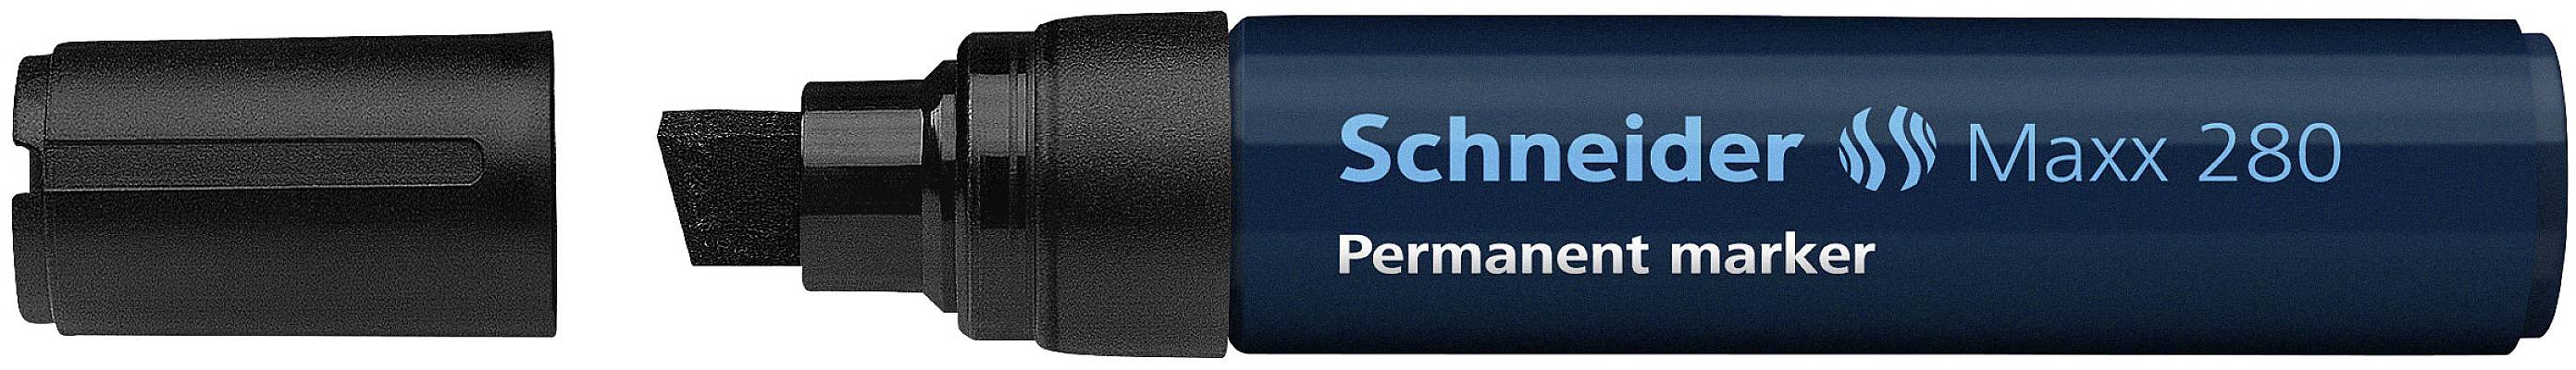 SCHNEIDER SCHREIBGERÄTE Schneider Maxx 280 Meißel Schwarz Permanent-Marker (128001)